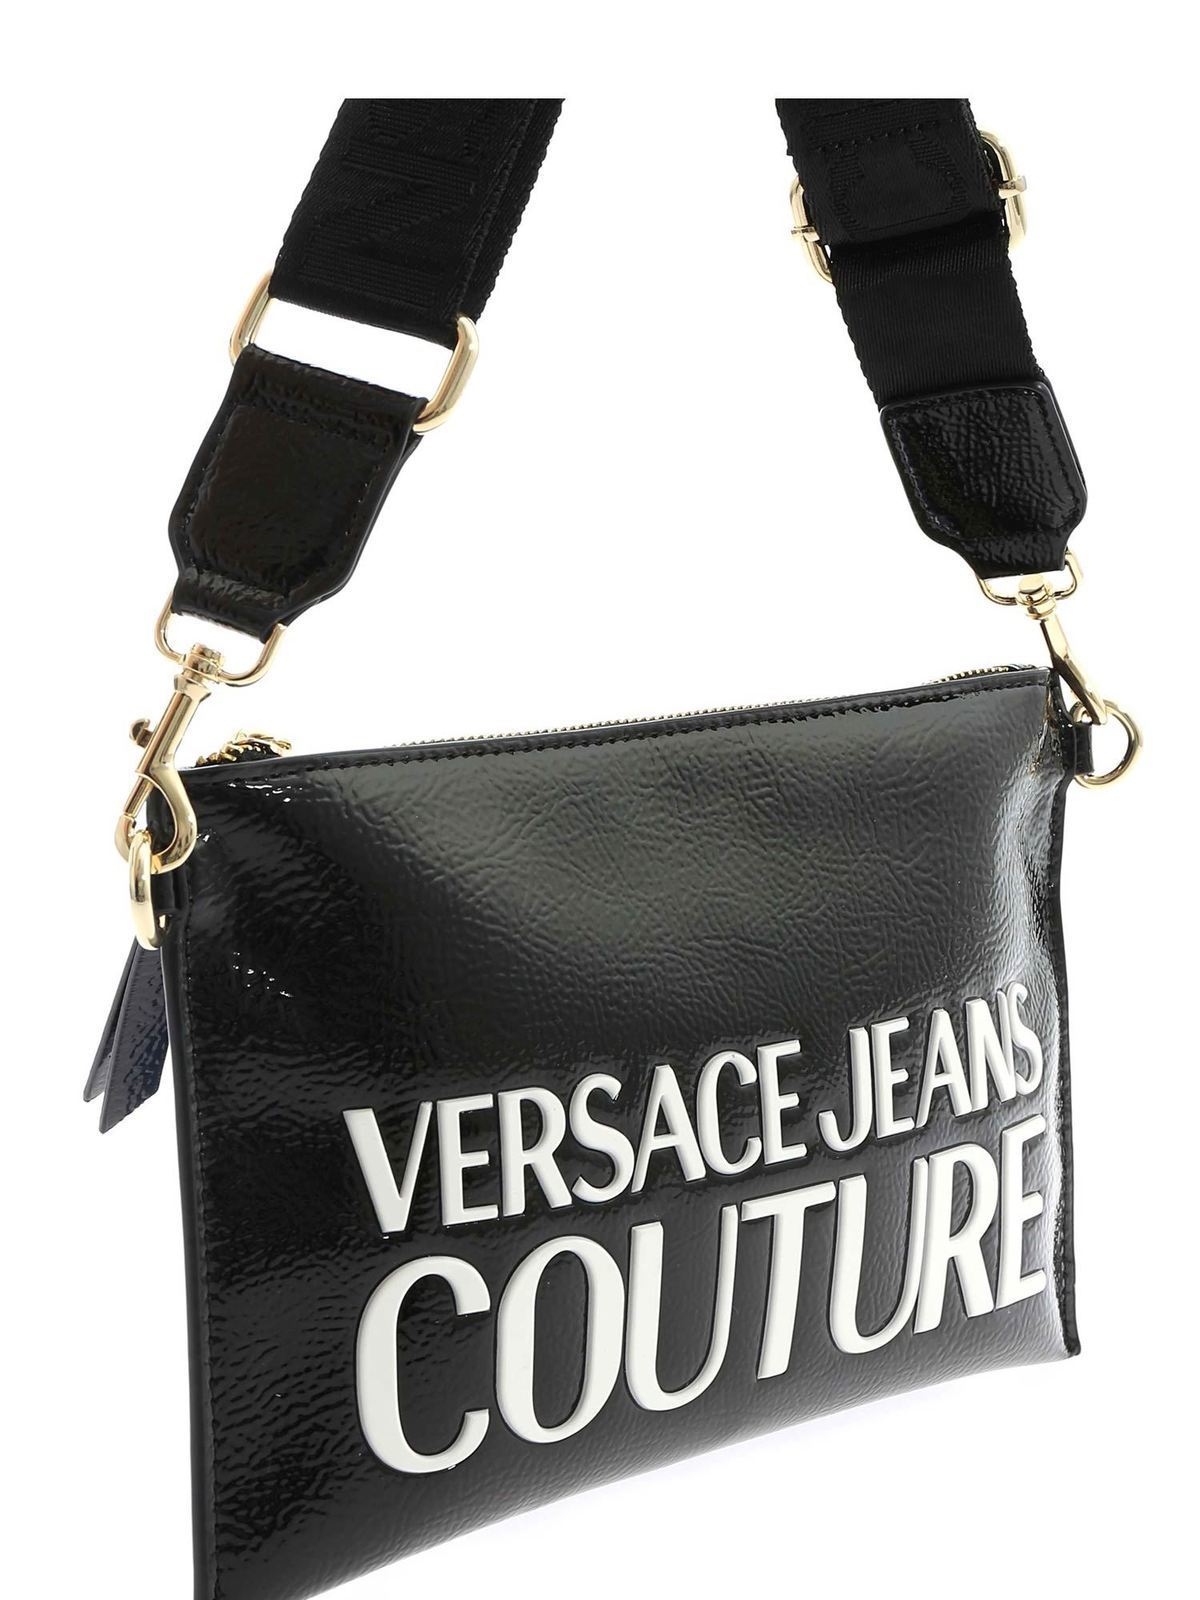 クラッチバッグ Versace Jeans Couture - クラッチバッグ - 黒